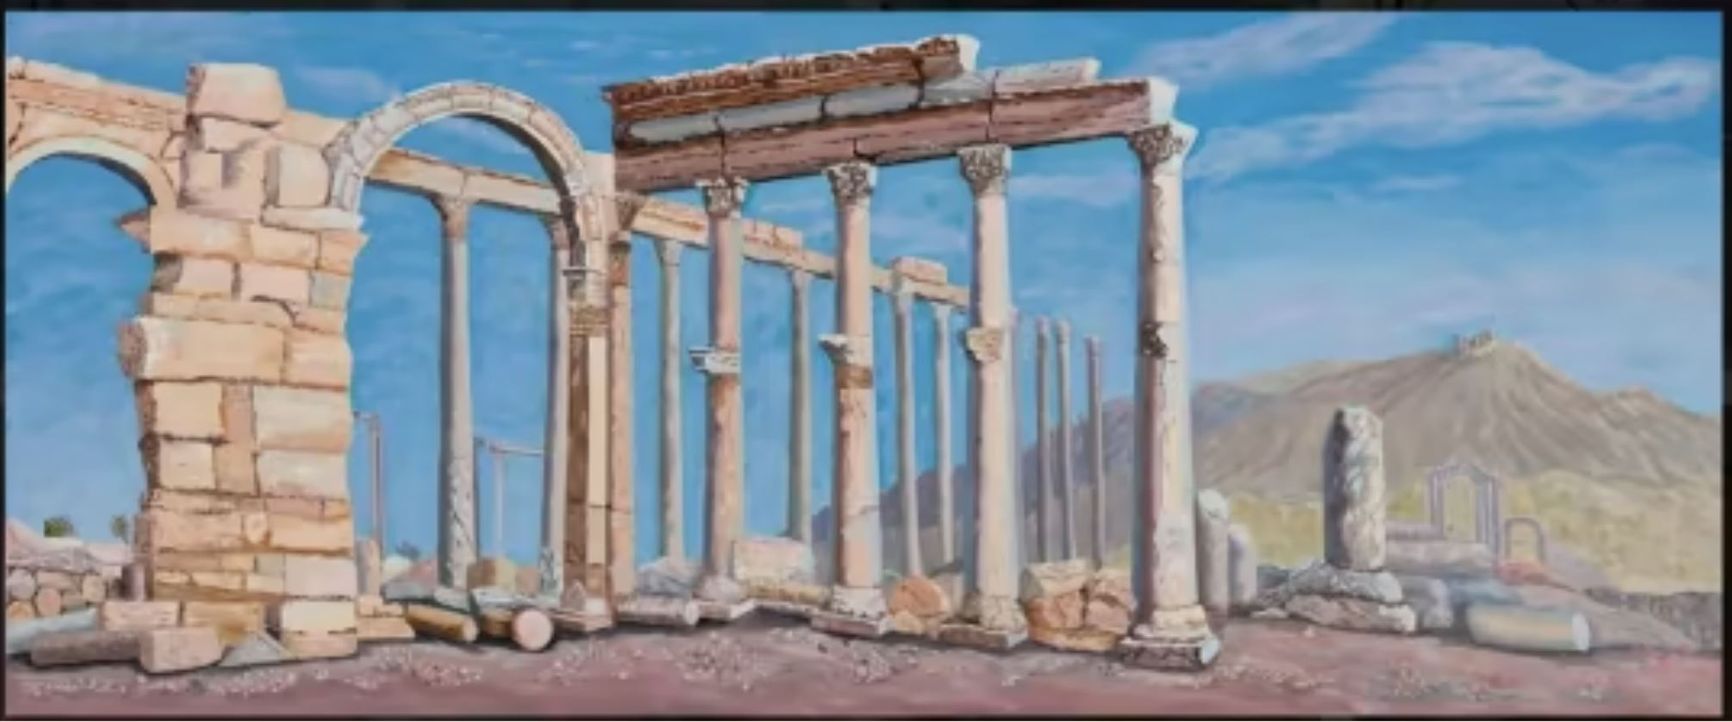 Одна из работ, выставленных в художественной галерее Виолетты Пригожиной, — пейзаж под названием «Пальмира в 2022 году» в честь древнего сирийского города, где базировались силы ЧВК Вагнера